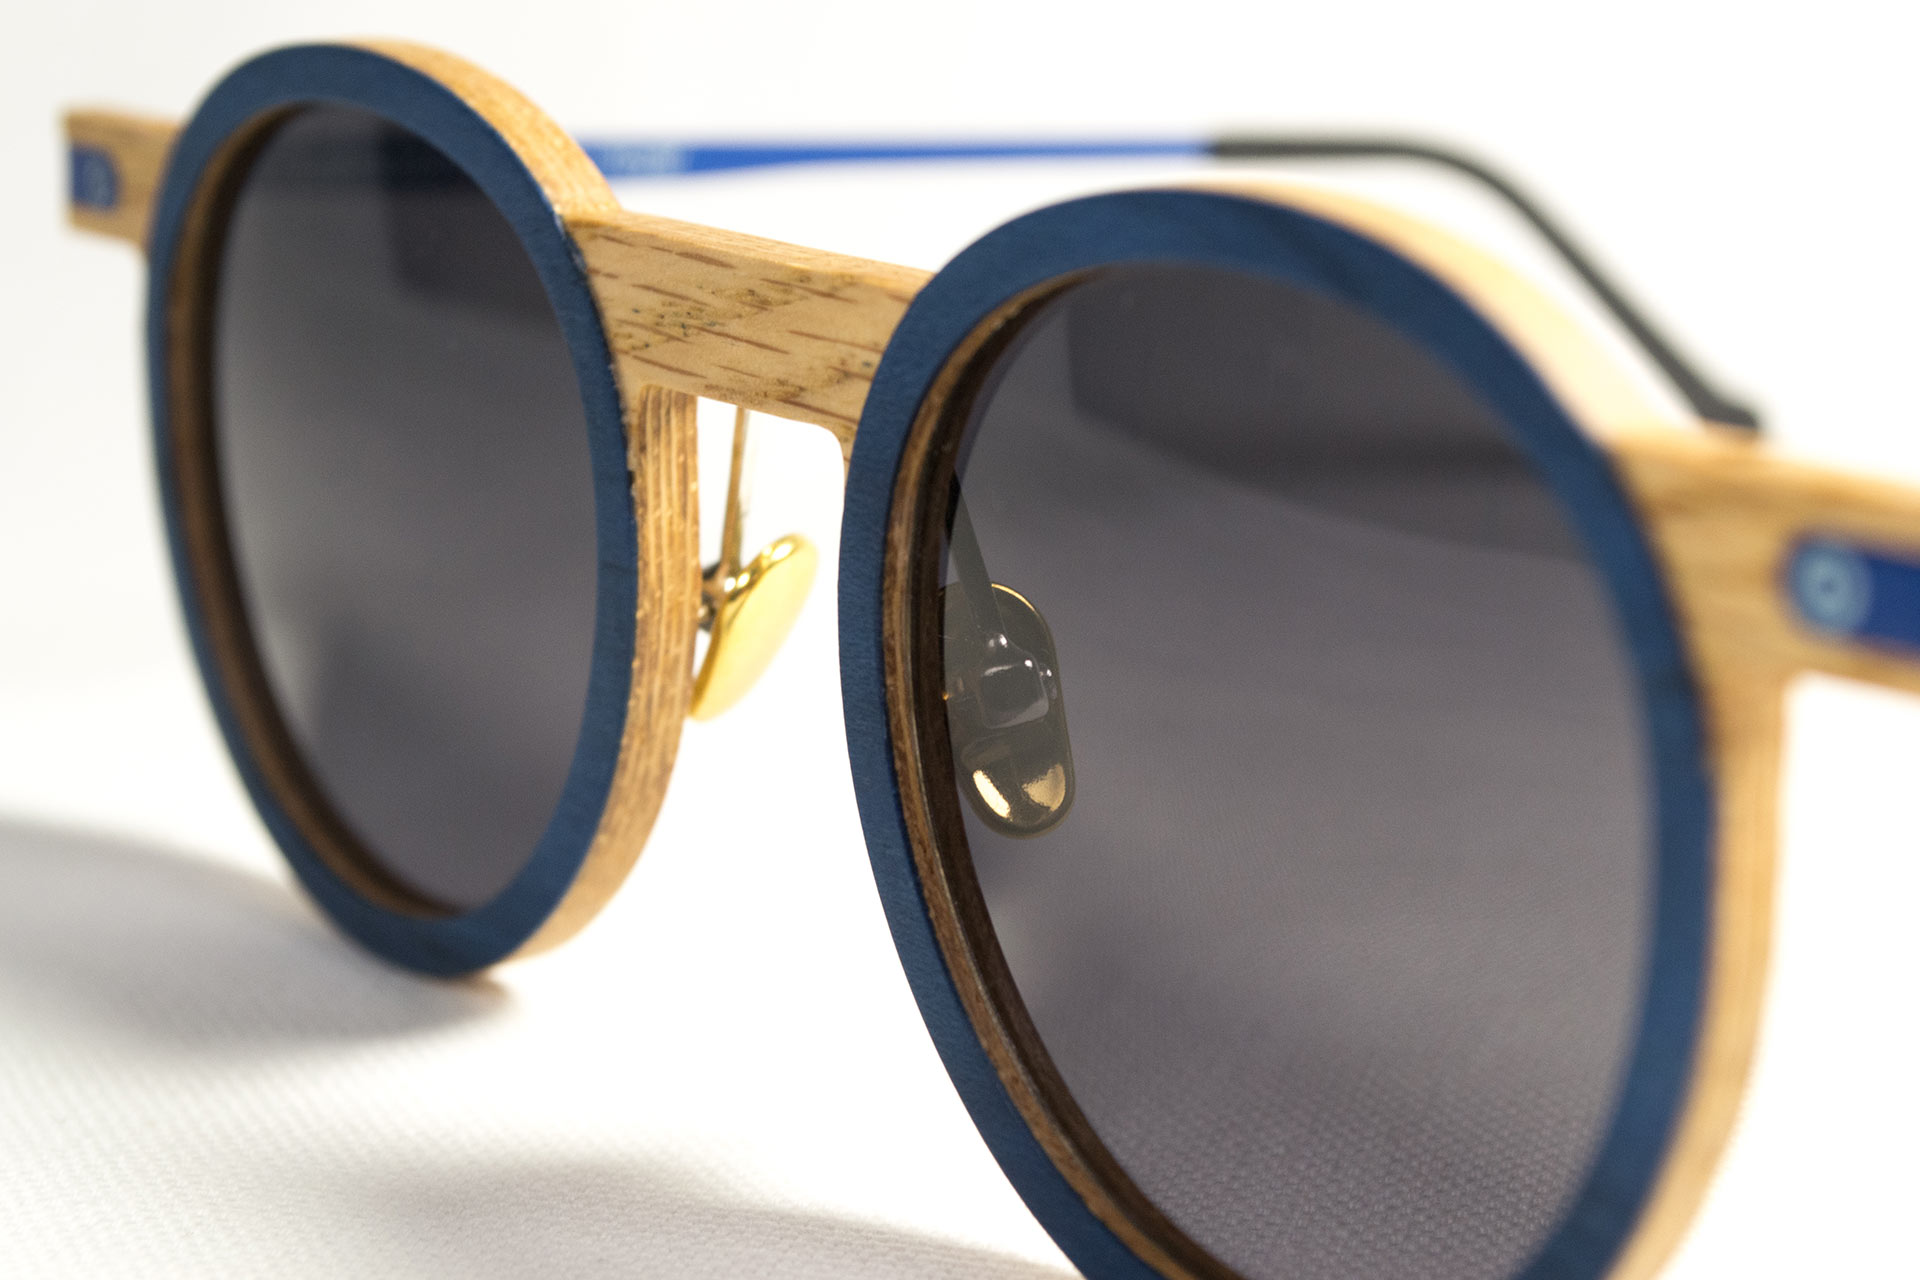 Paire de lunettes écoresponsables avec une monture bleue bois et métal créée par Ozed, entreprise implantée à Lyon